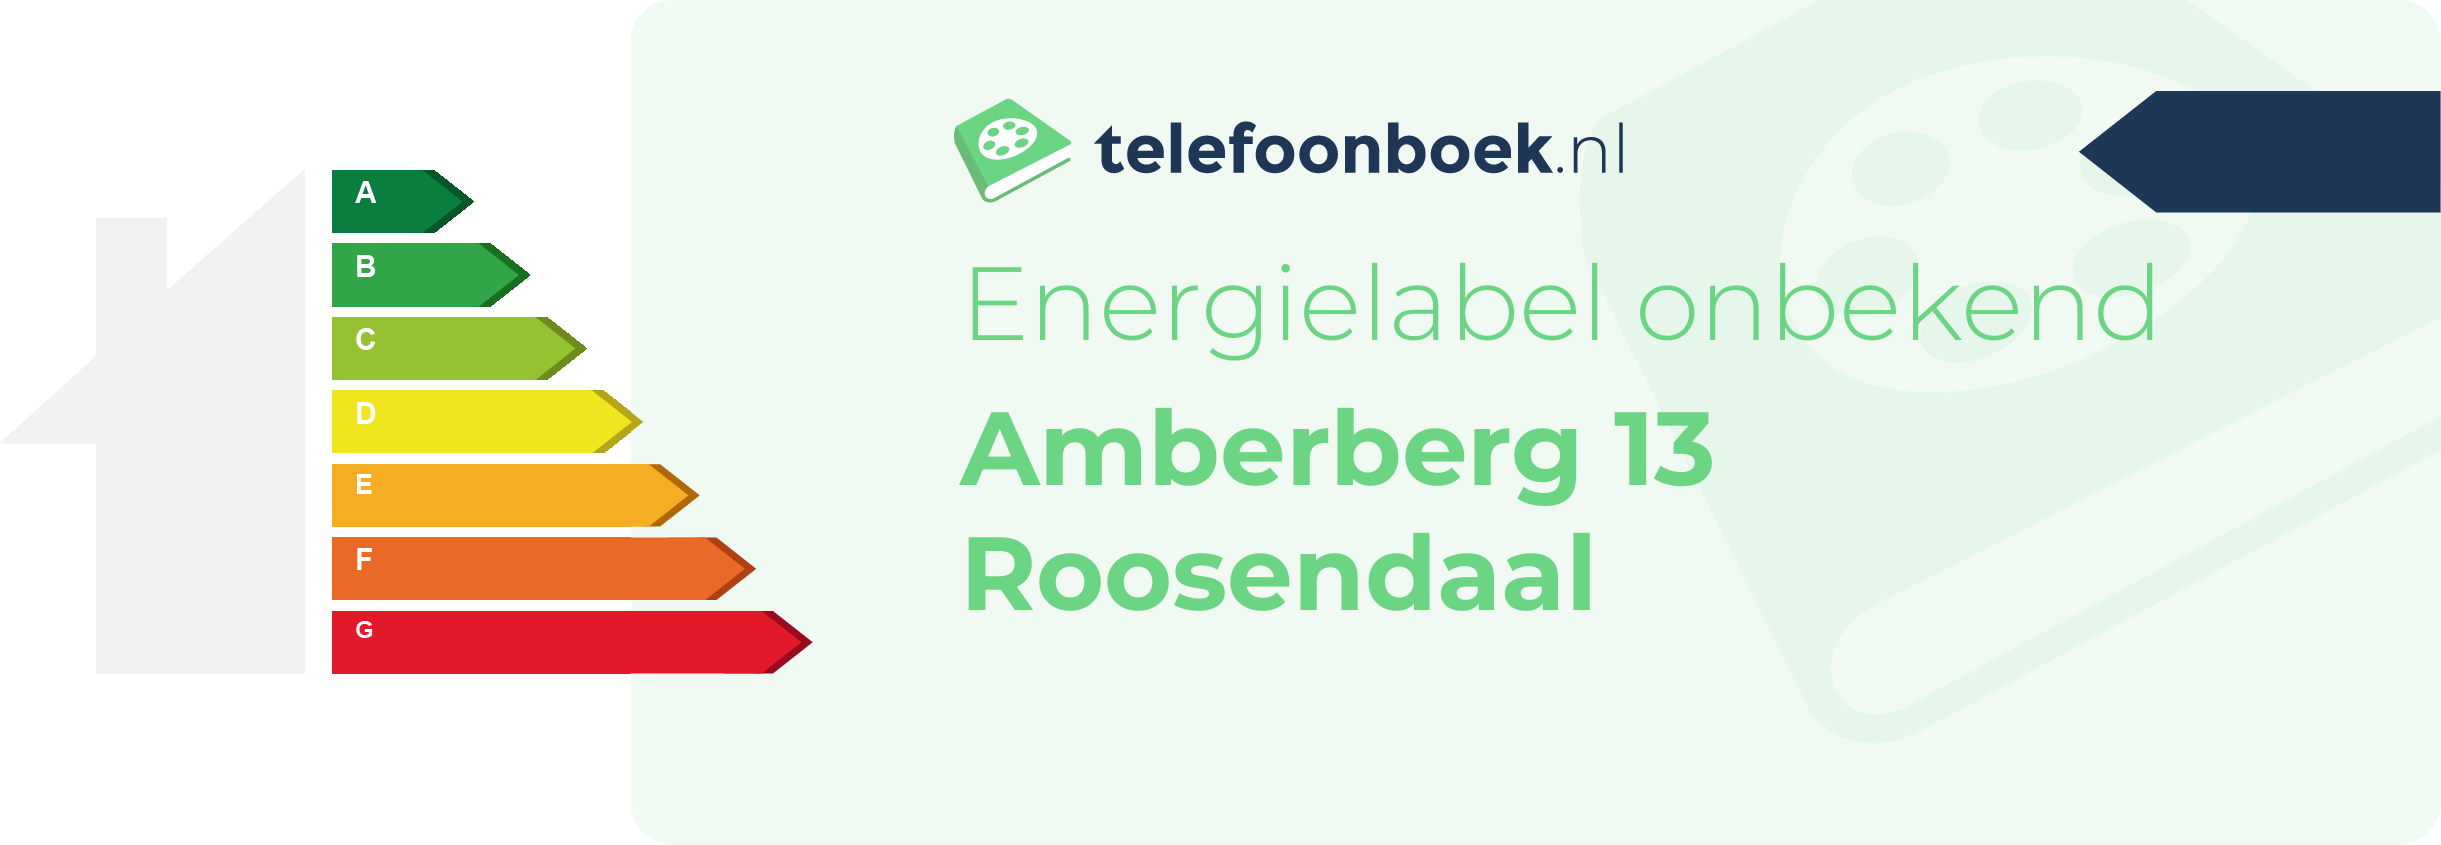 Energielabel Amberberg 13 Roosendaal